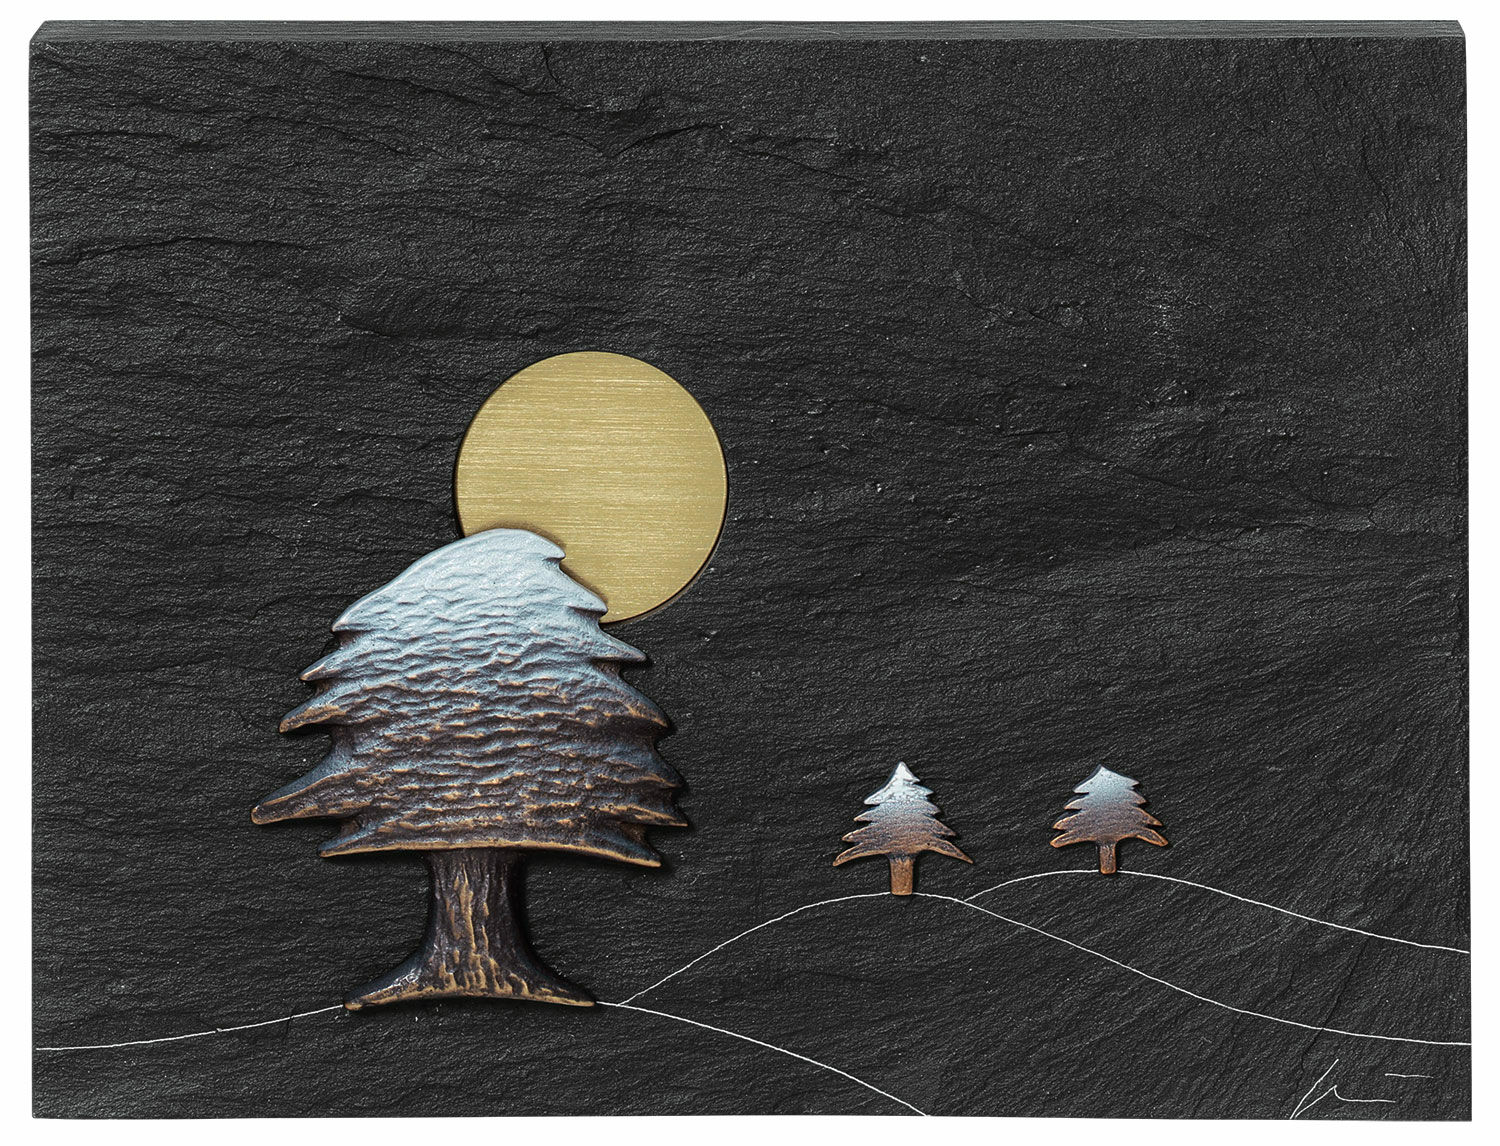 Wandobject "WINTER - Sneeuw die valt op ceders" - uit de "Seizoenencyclus" von Klaus Börner